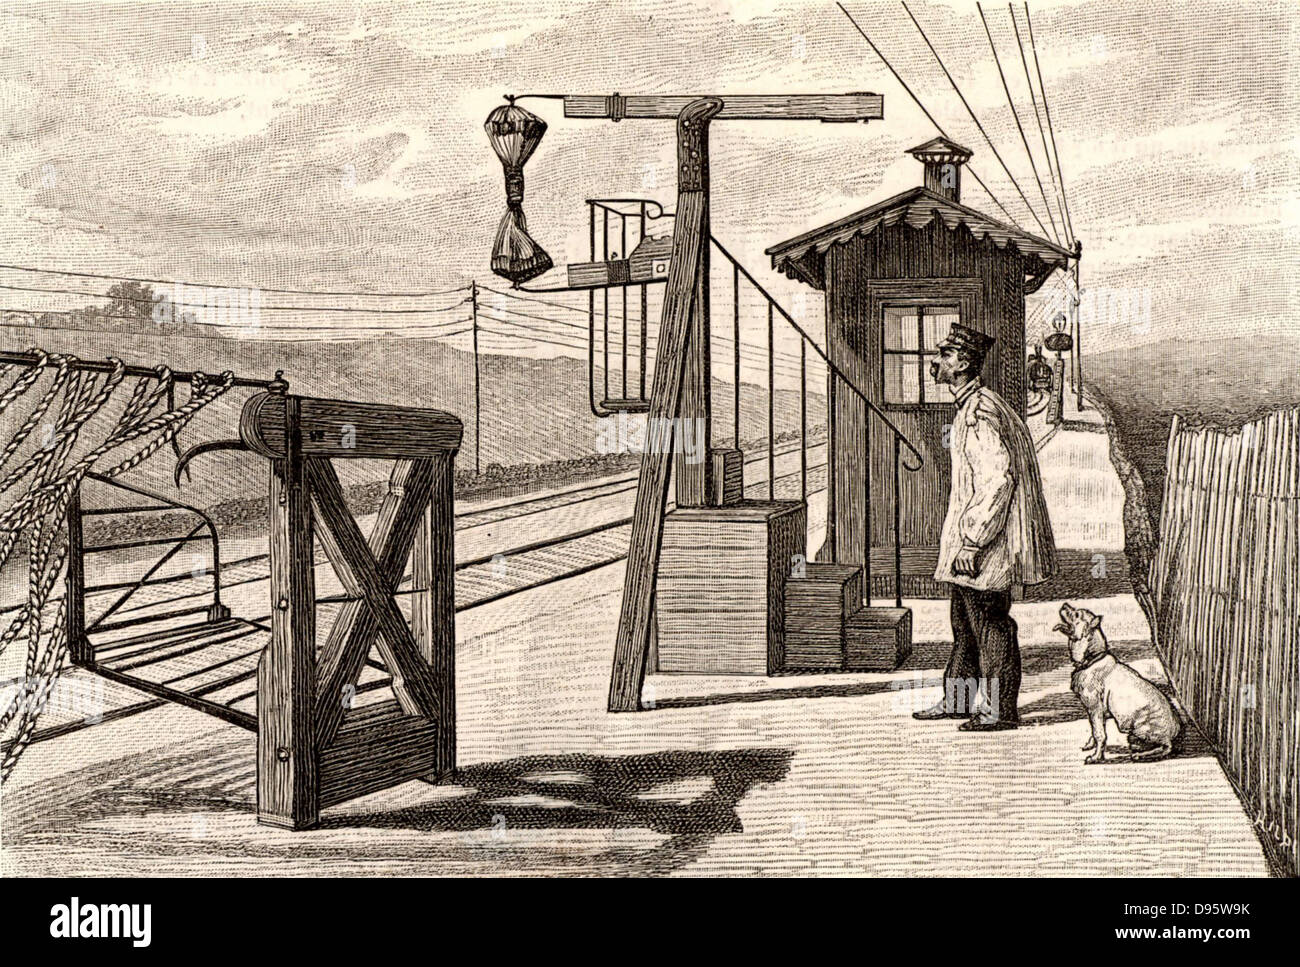 Französischen Post. Mail der Zug nähert sich einem Bahnhof Plattform mit Vorrichtung für den Fang von Säcken der Mail aus dem fahrenden Zug. Gravur von "Le Journal de La Jeunesse" (Paris, 1886). Stockfoto